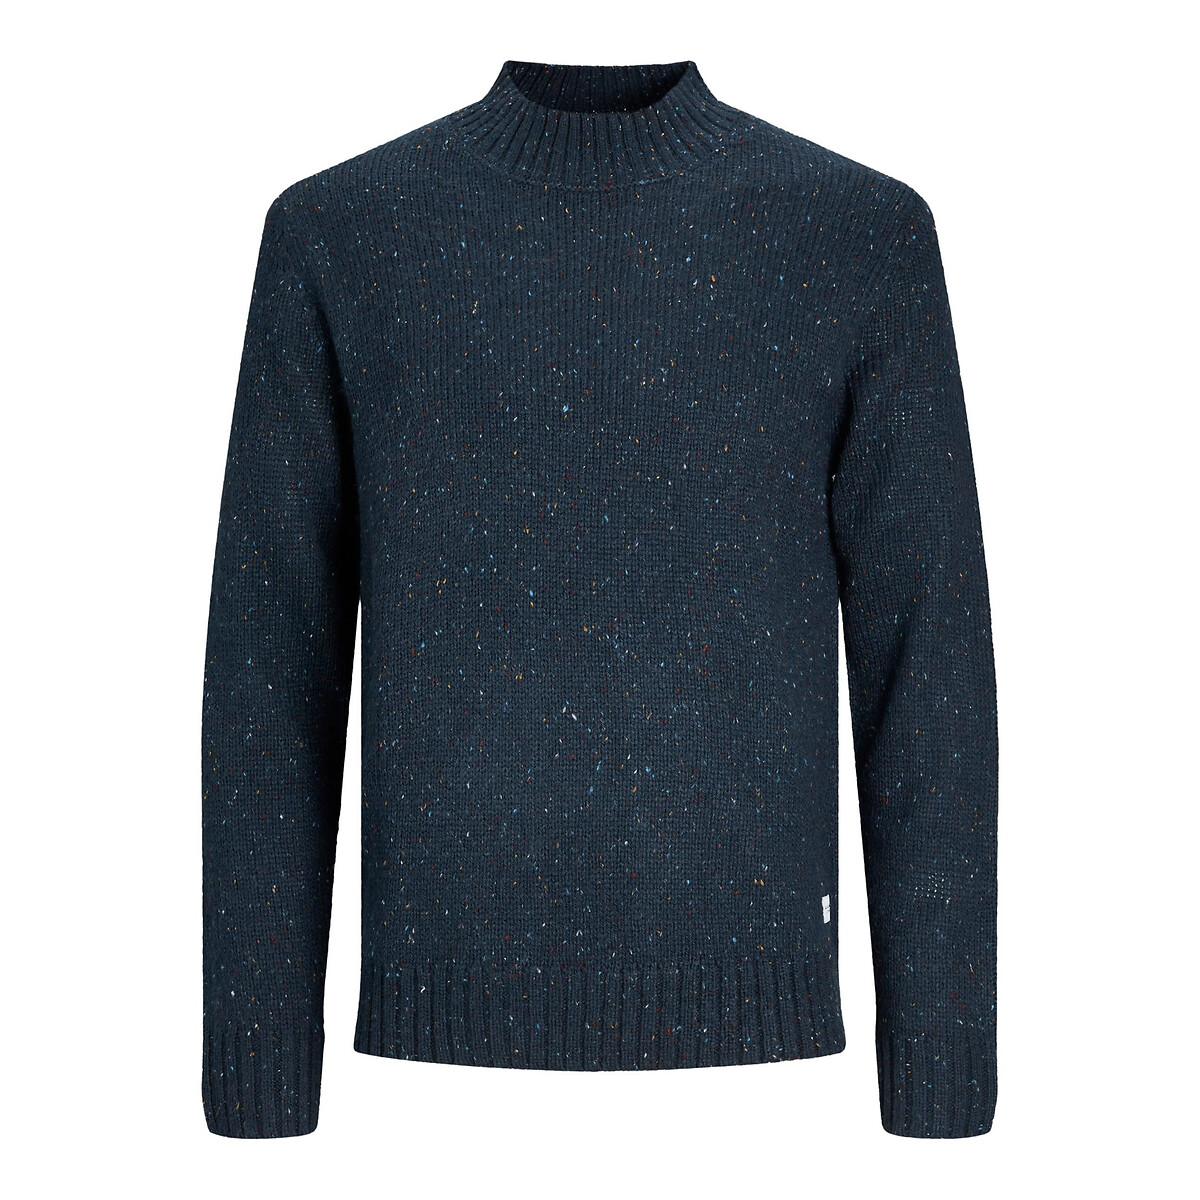 Пуловер с воротником-стойкой Jjnolan XXL синий пуловер с воротником стойкой xxl каштановый